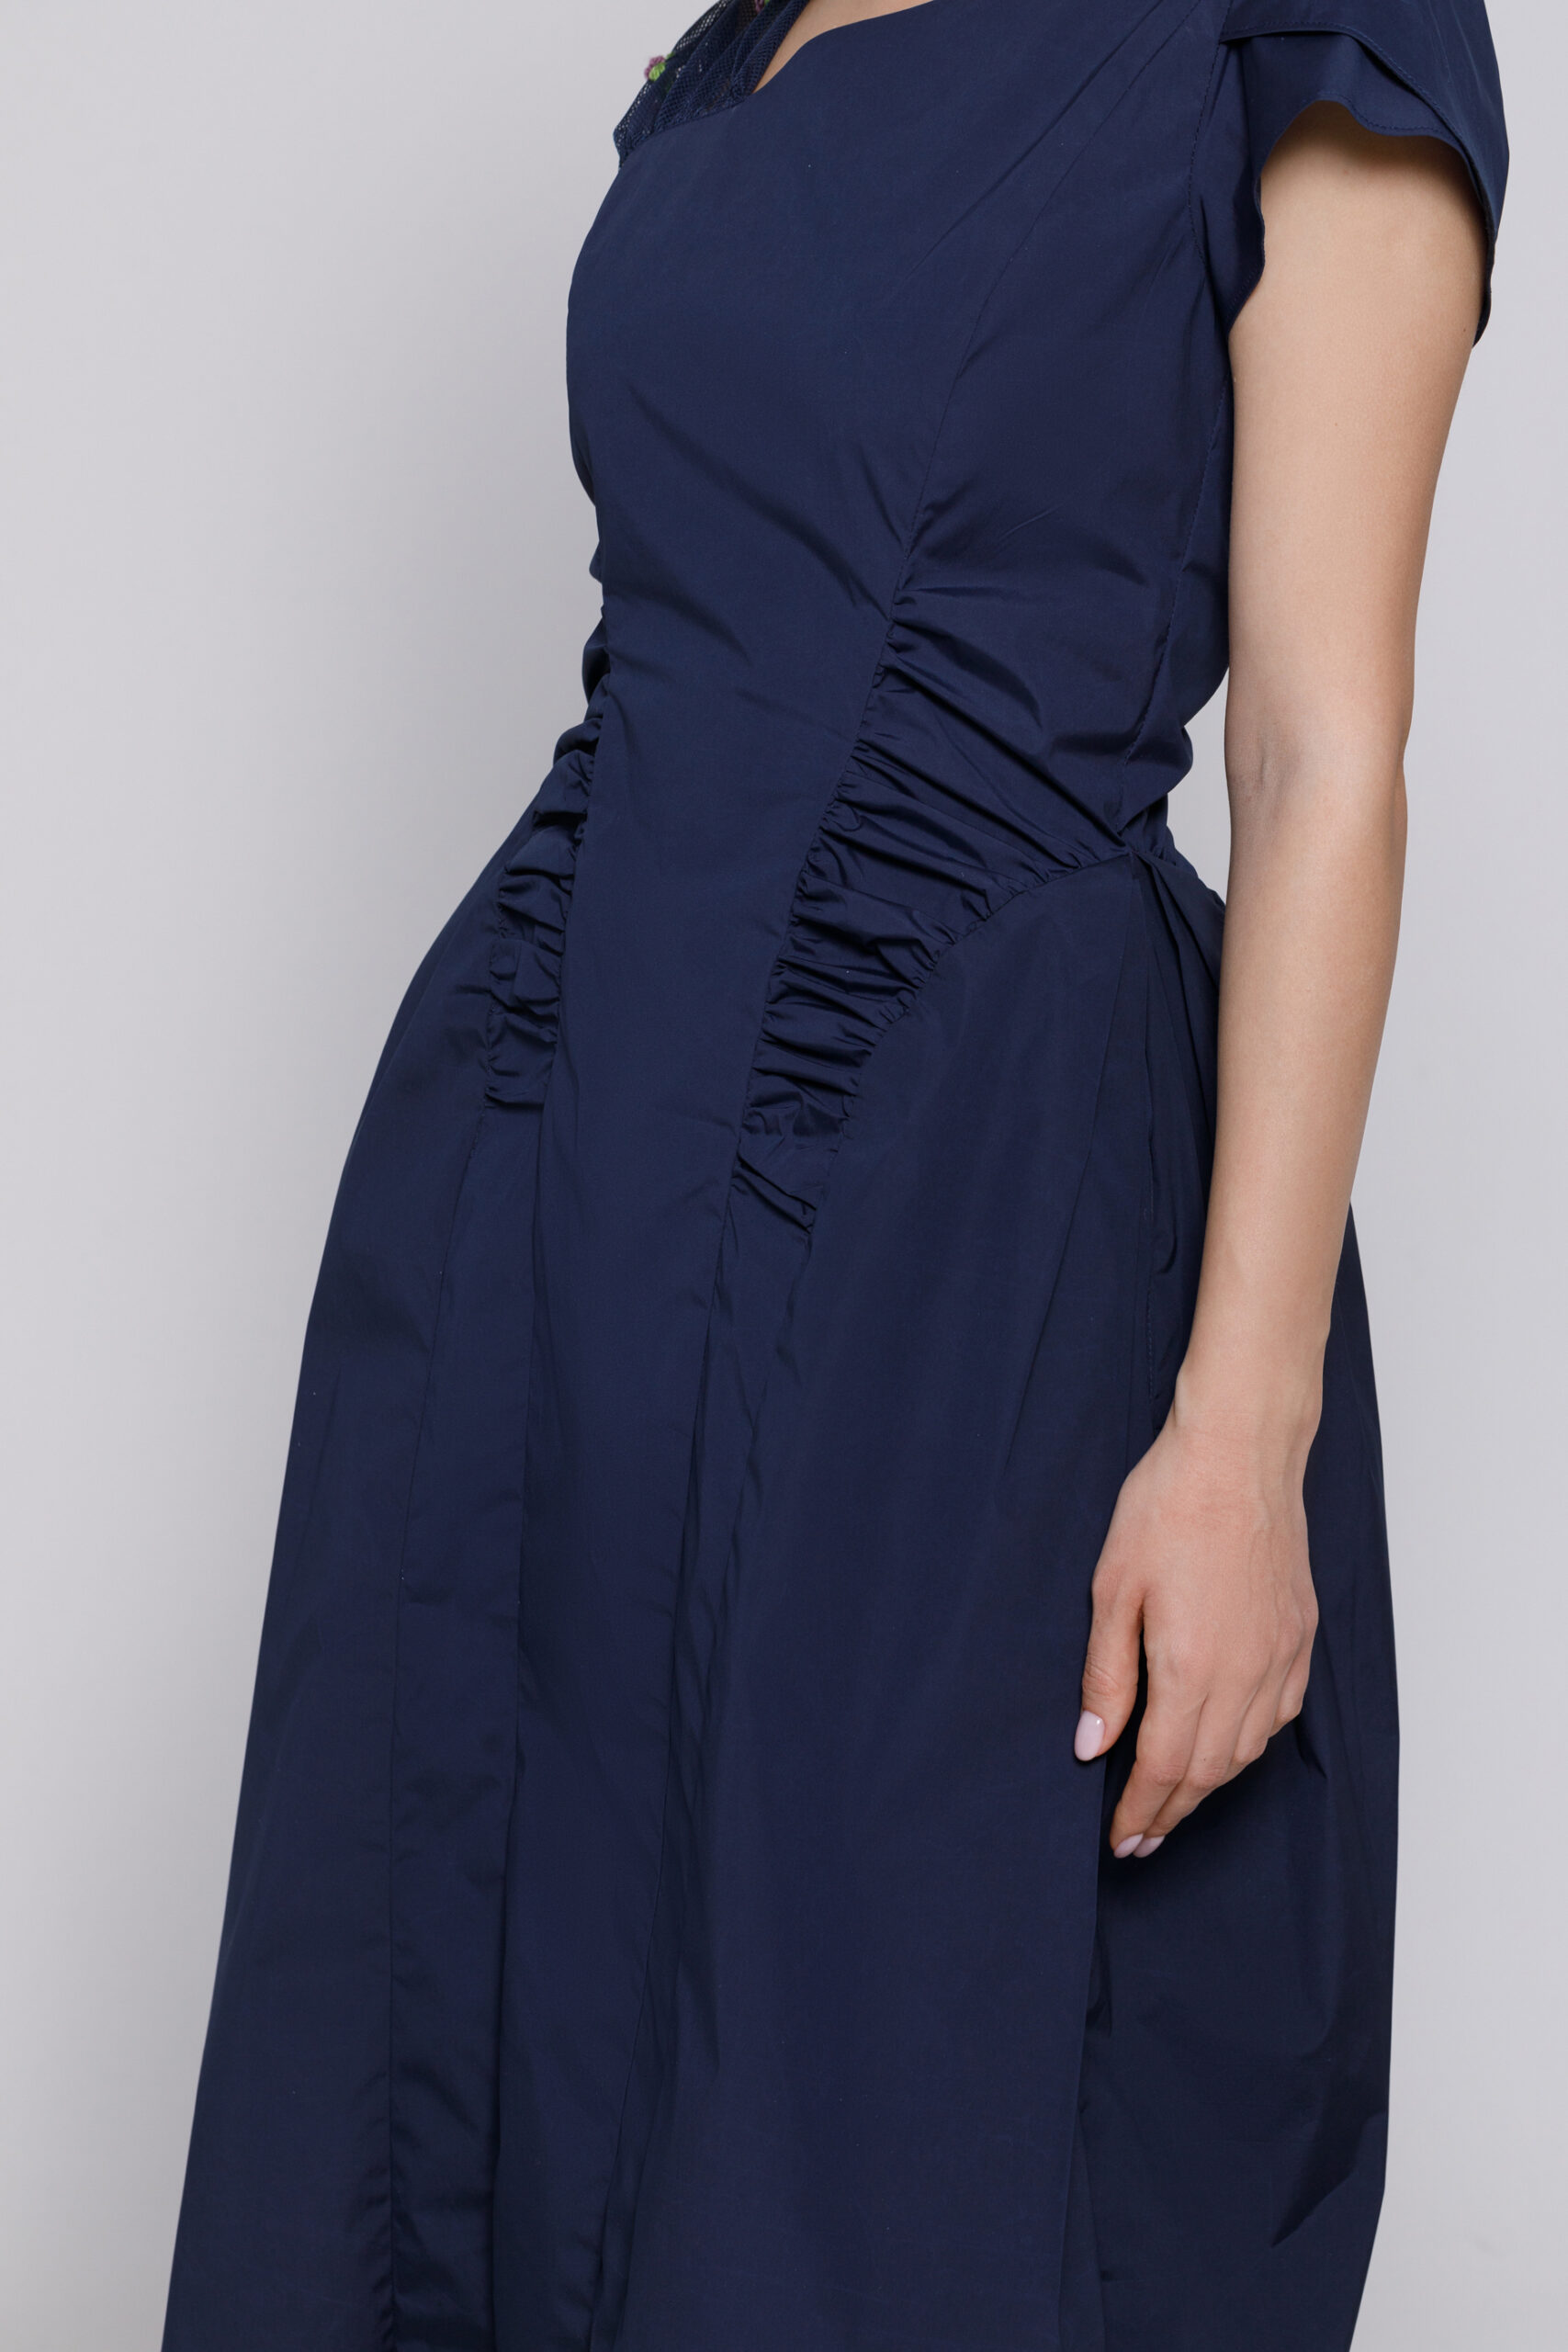 KEIRA powder blue dress with drape. Natural fabrics, original design, handmade embroidery